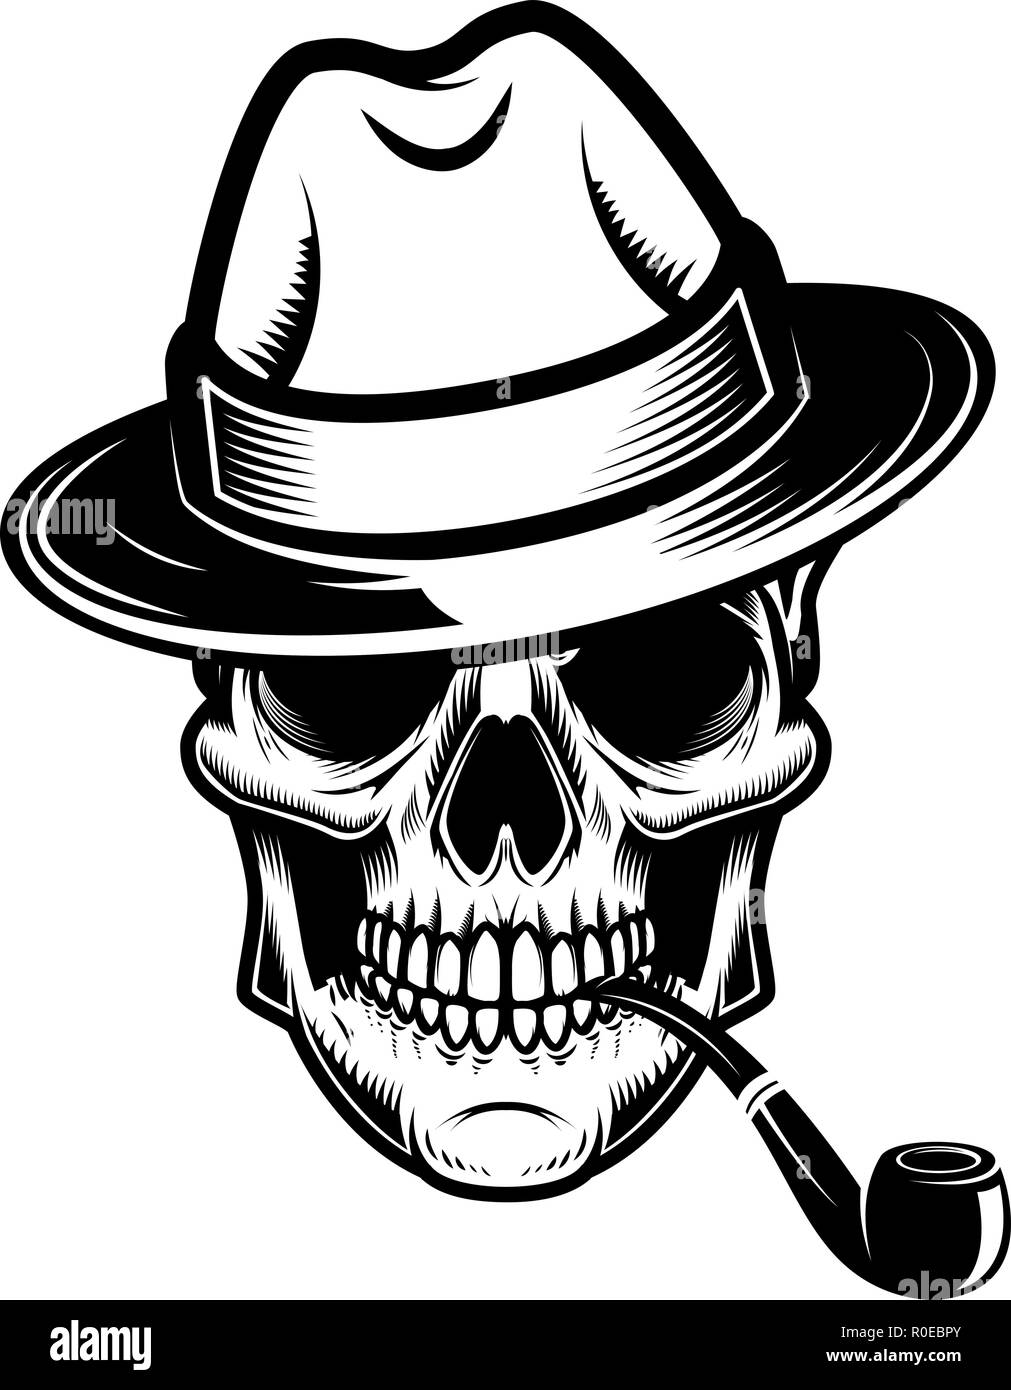 Totenkopf mit Hut und Rauchen. Design Element für Logo, Label, Emblem, sign. Vector Illustration Stock Vektor